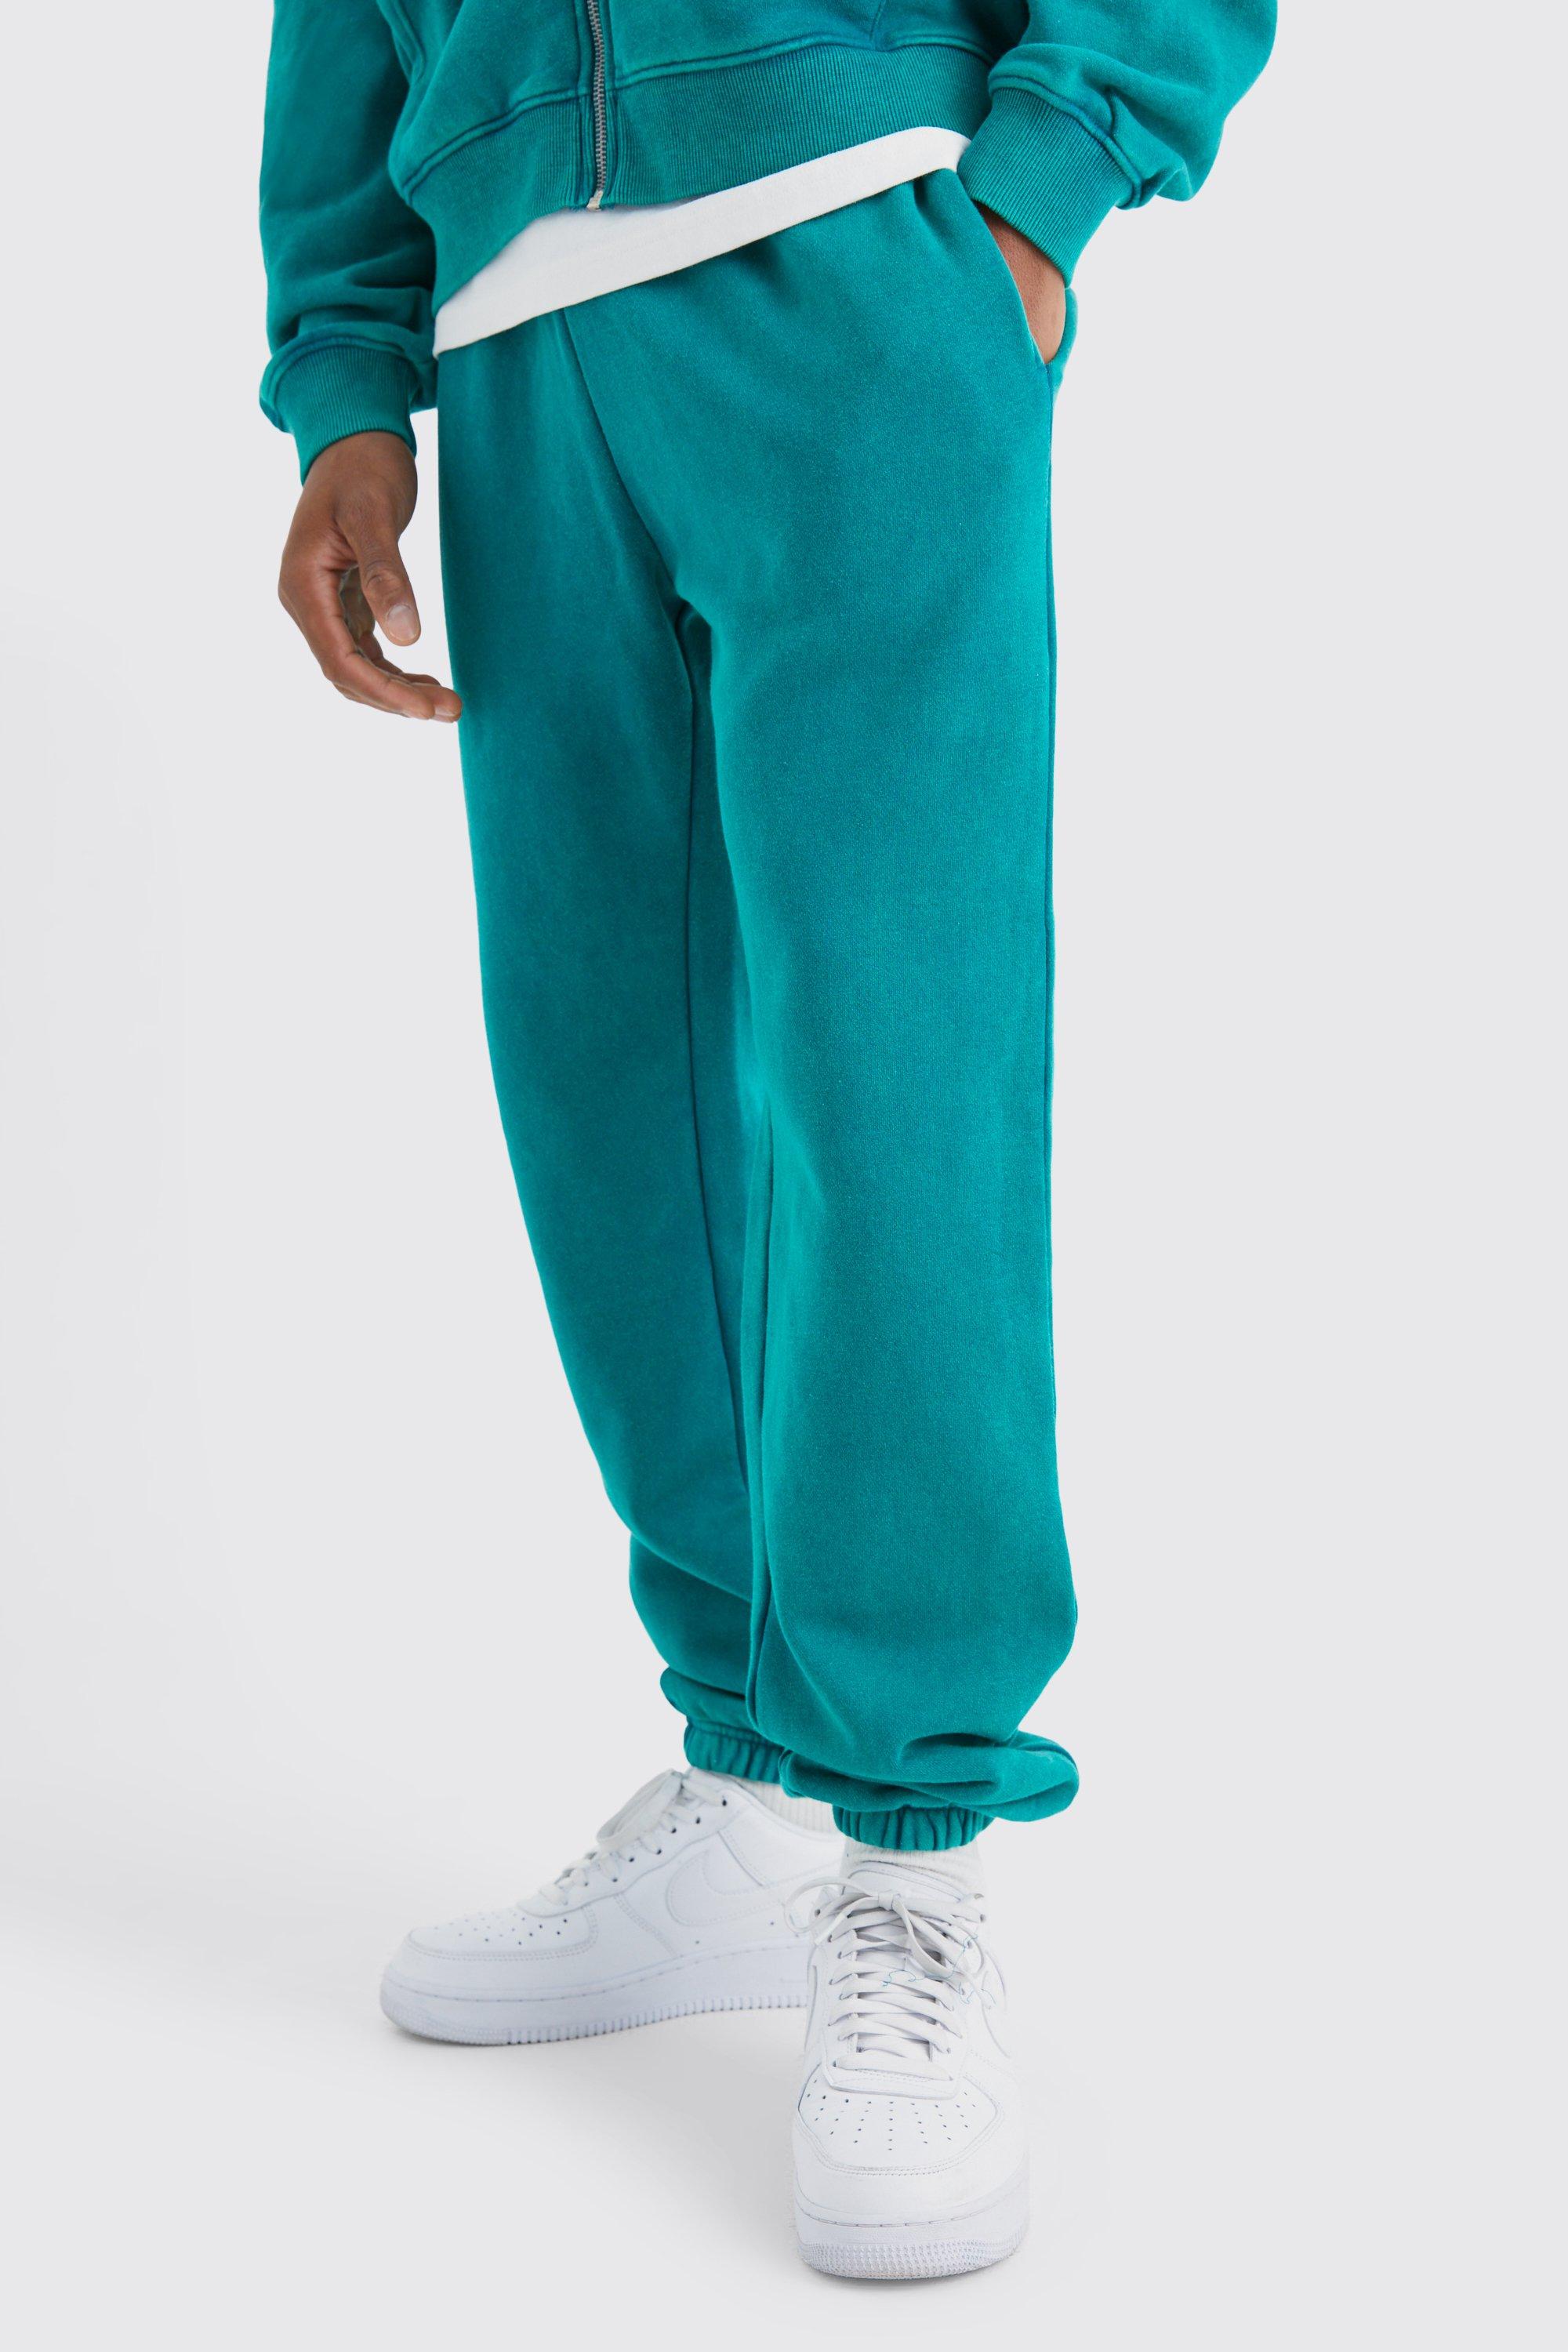 Image of Pantaloni tuta Core Fit slavati, Verde